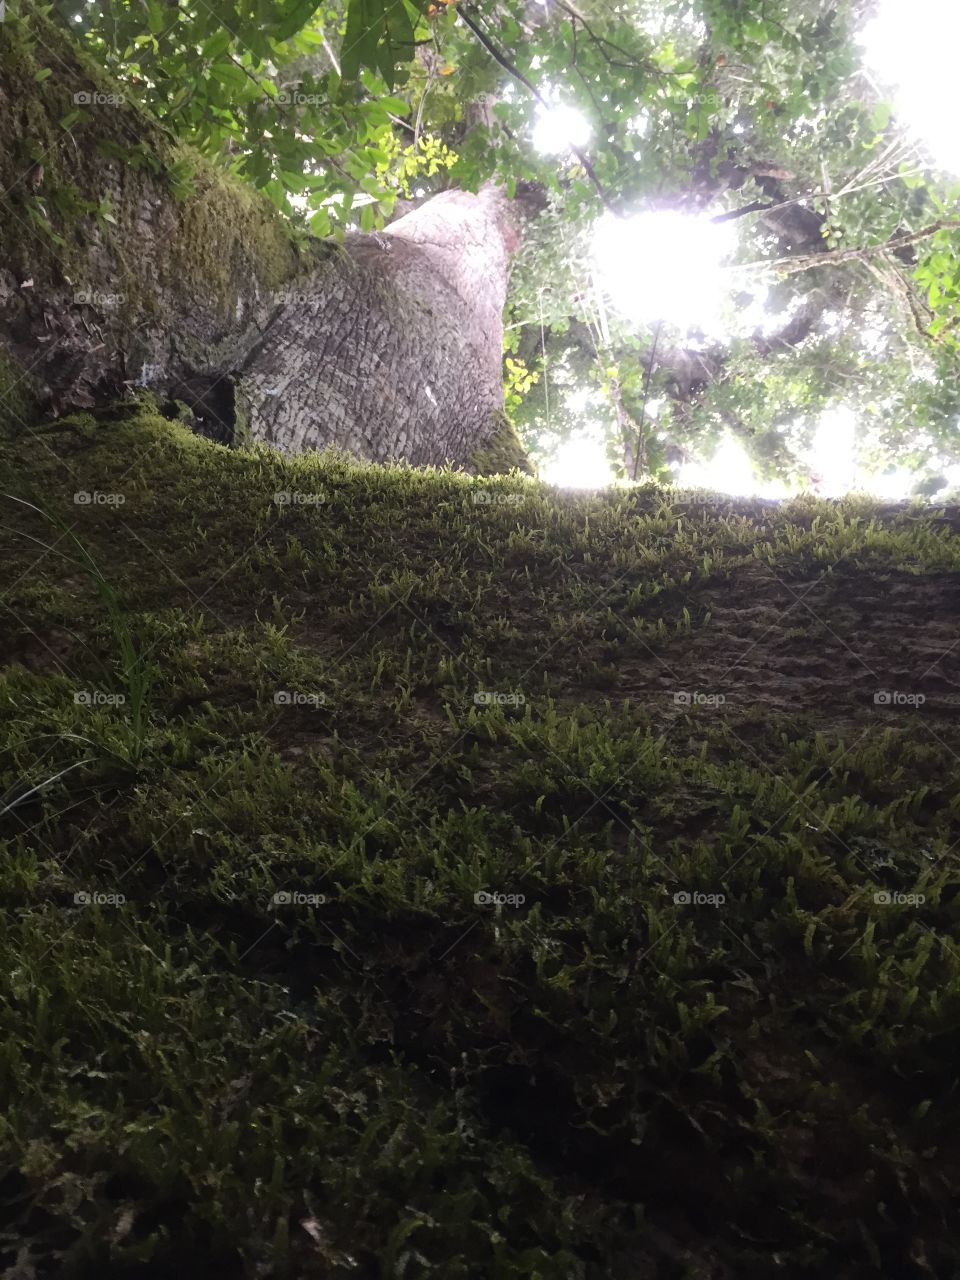 Kapok tree. Amzon rainforest Ecuador